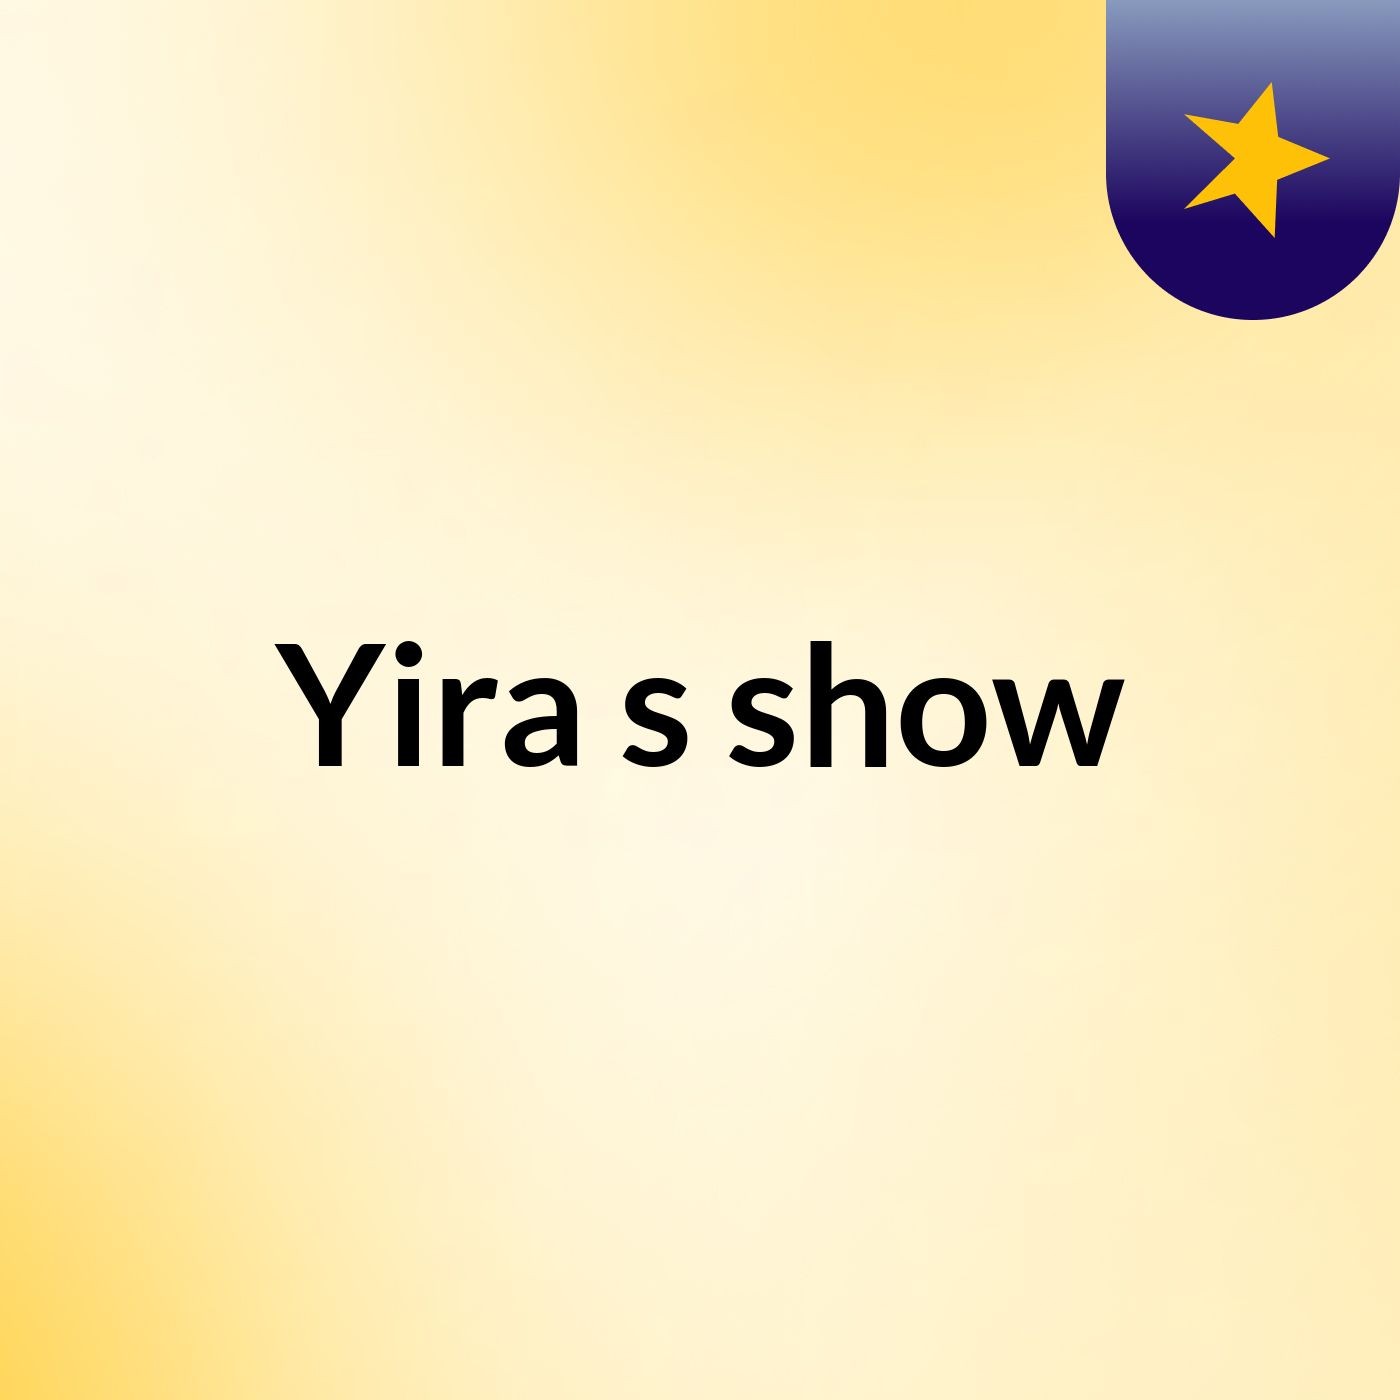 Yira's show